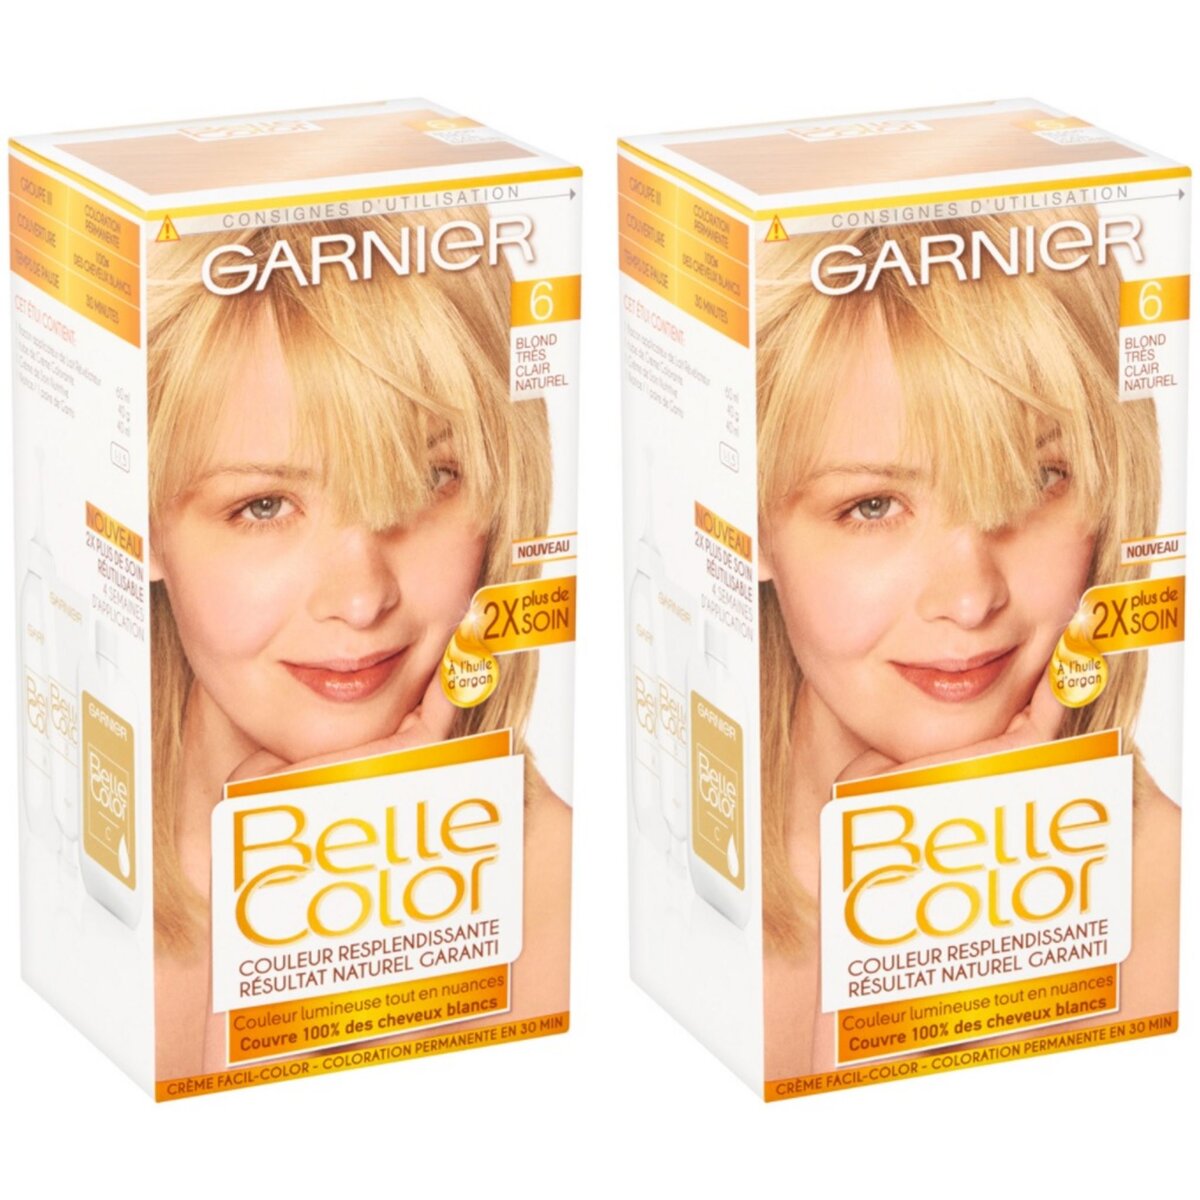 GARNIER Lot de 2 BELLE COLOR Coloration Permanente Résultat Naturel - Couleur Resplendissante 06 Blond Très Clair